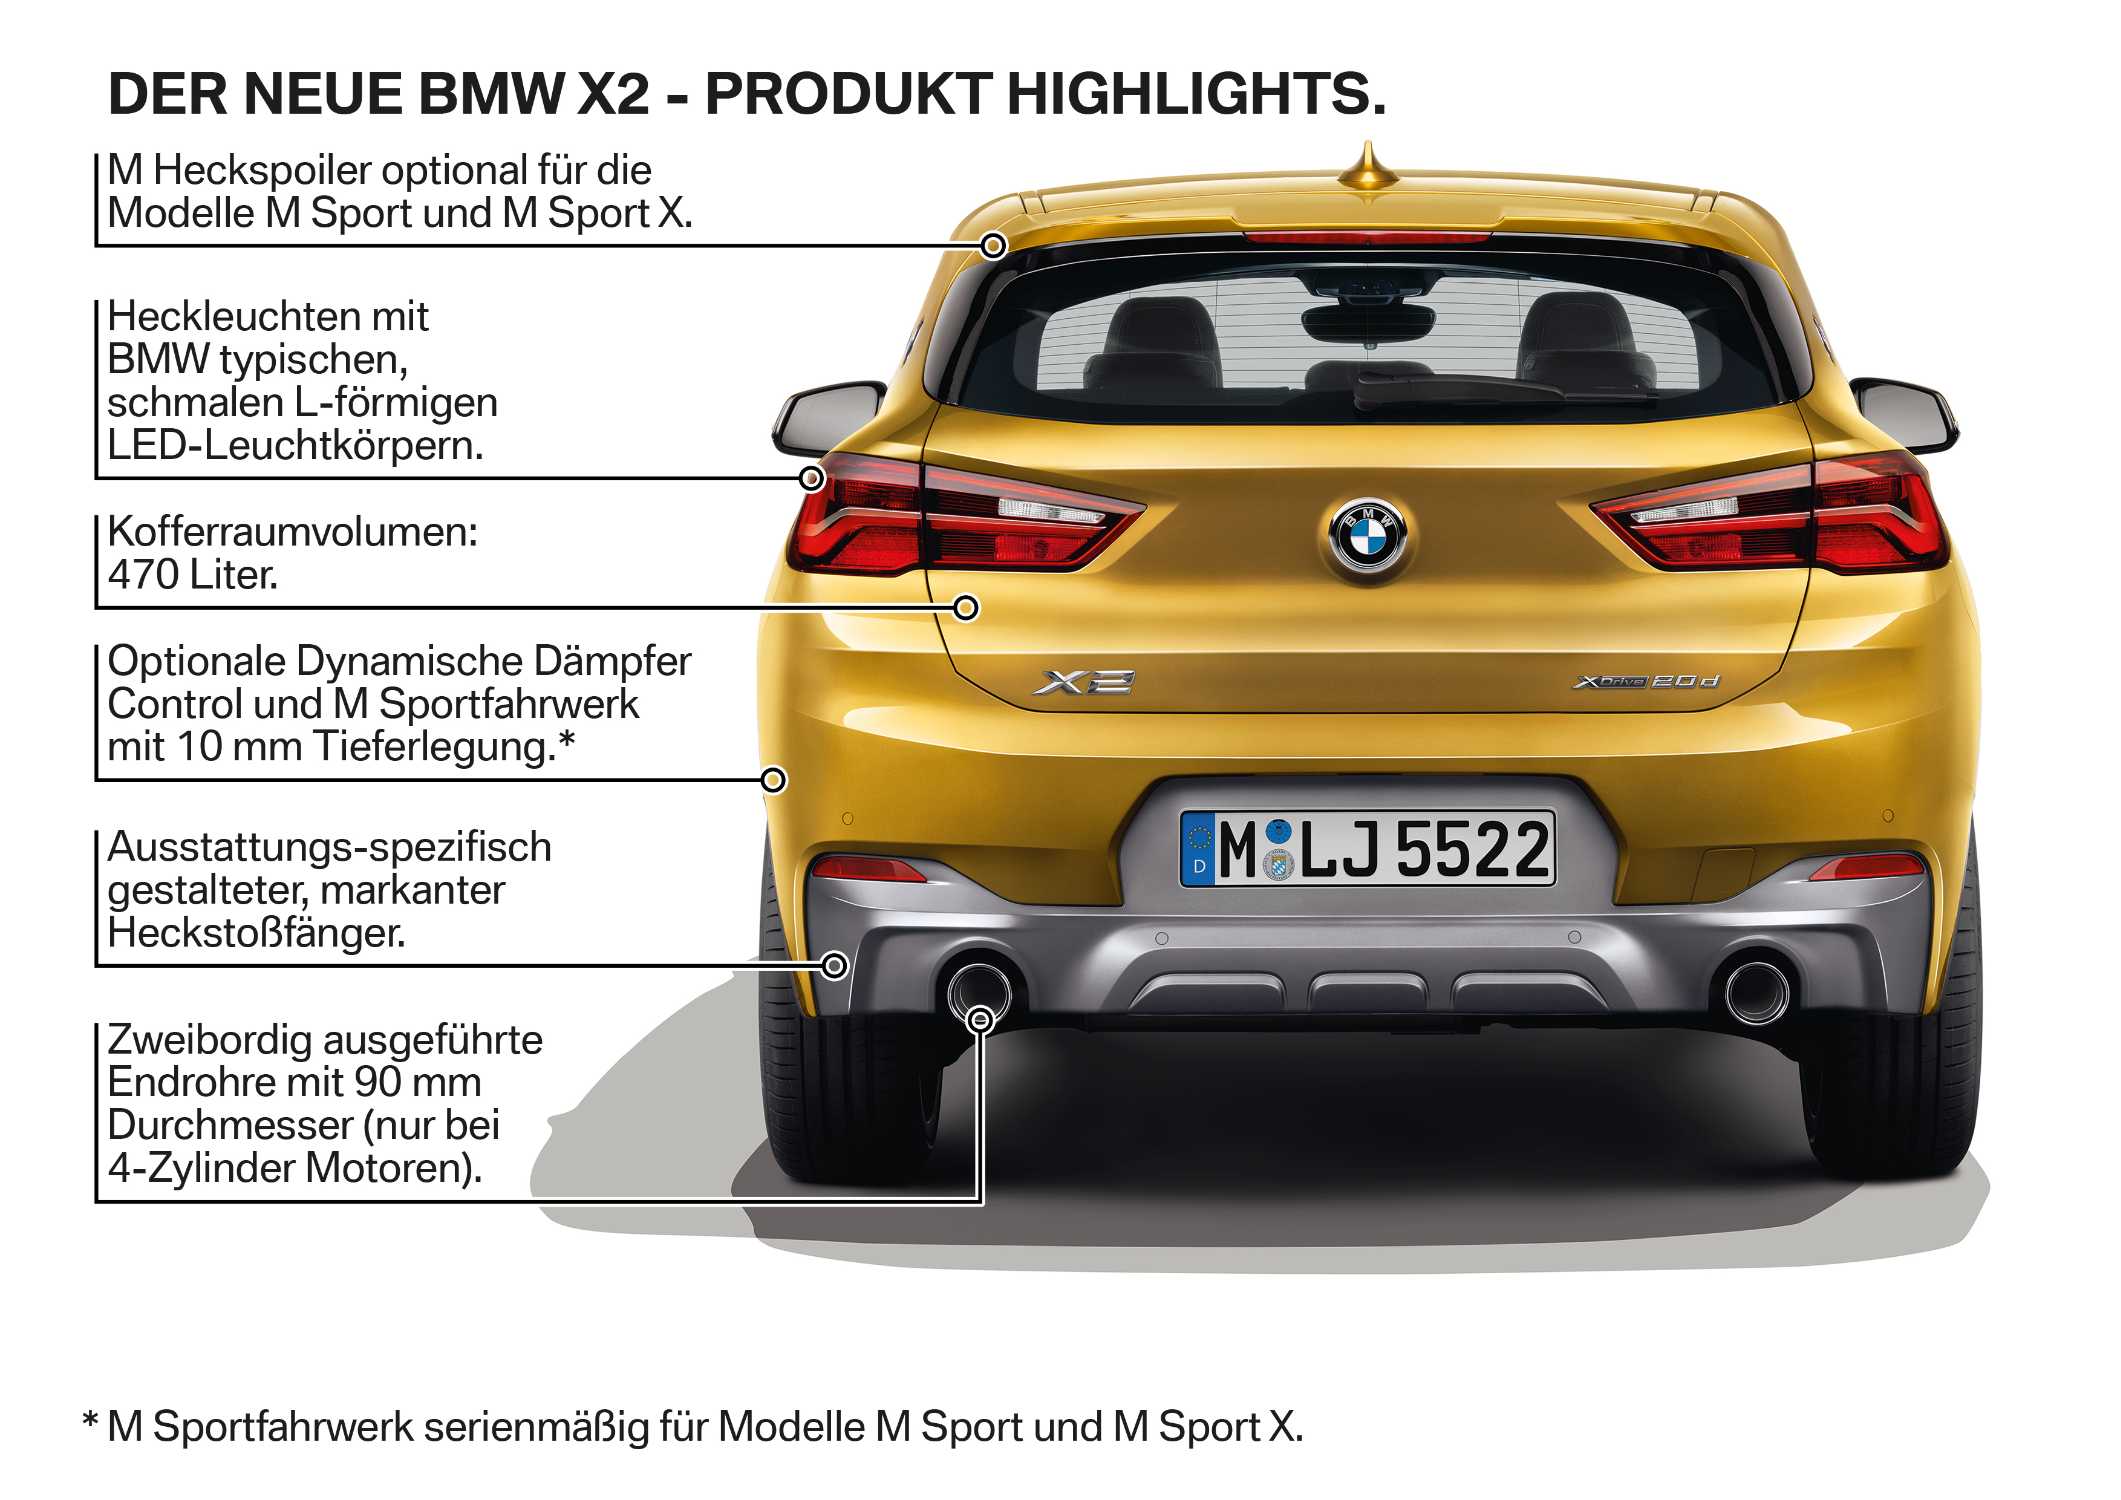 Der neue BMW X2 - Produkt Highlights (10/2017).